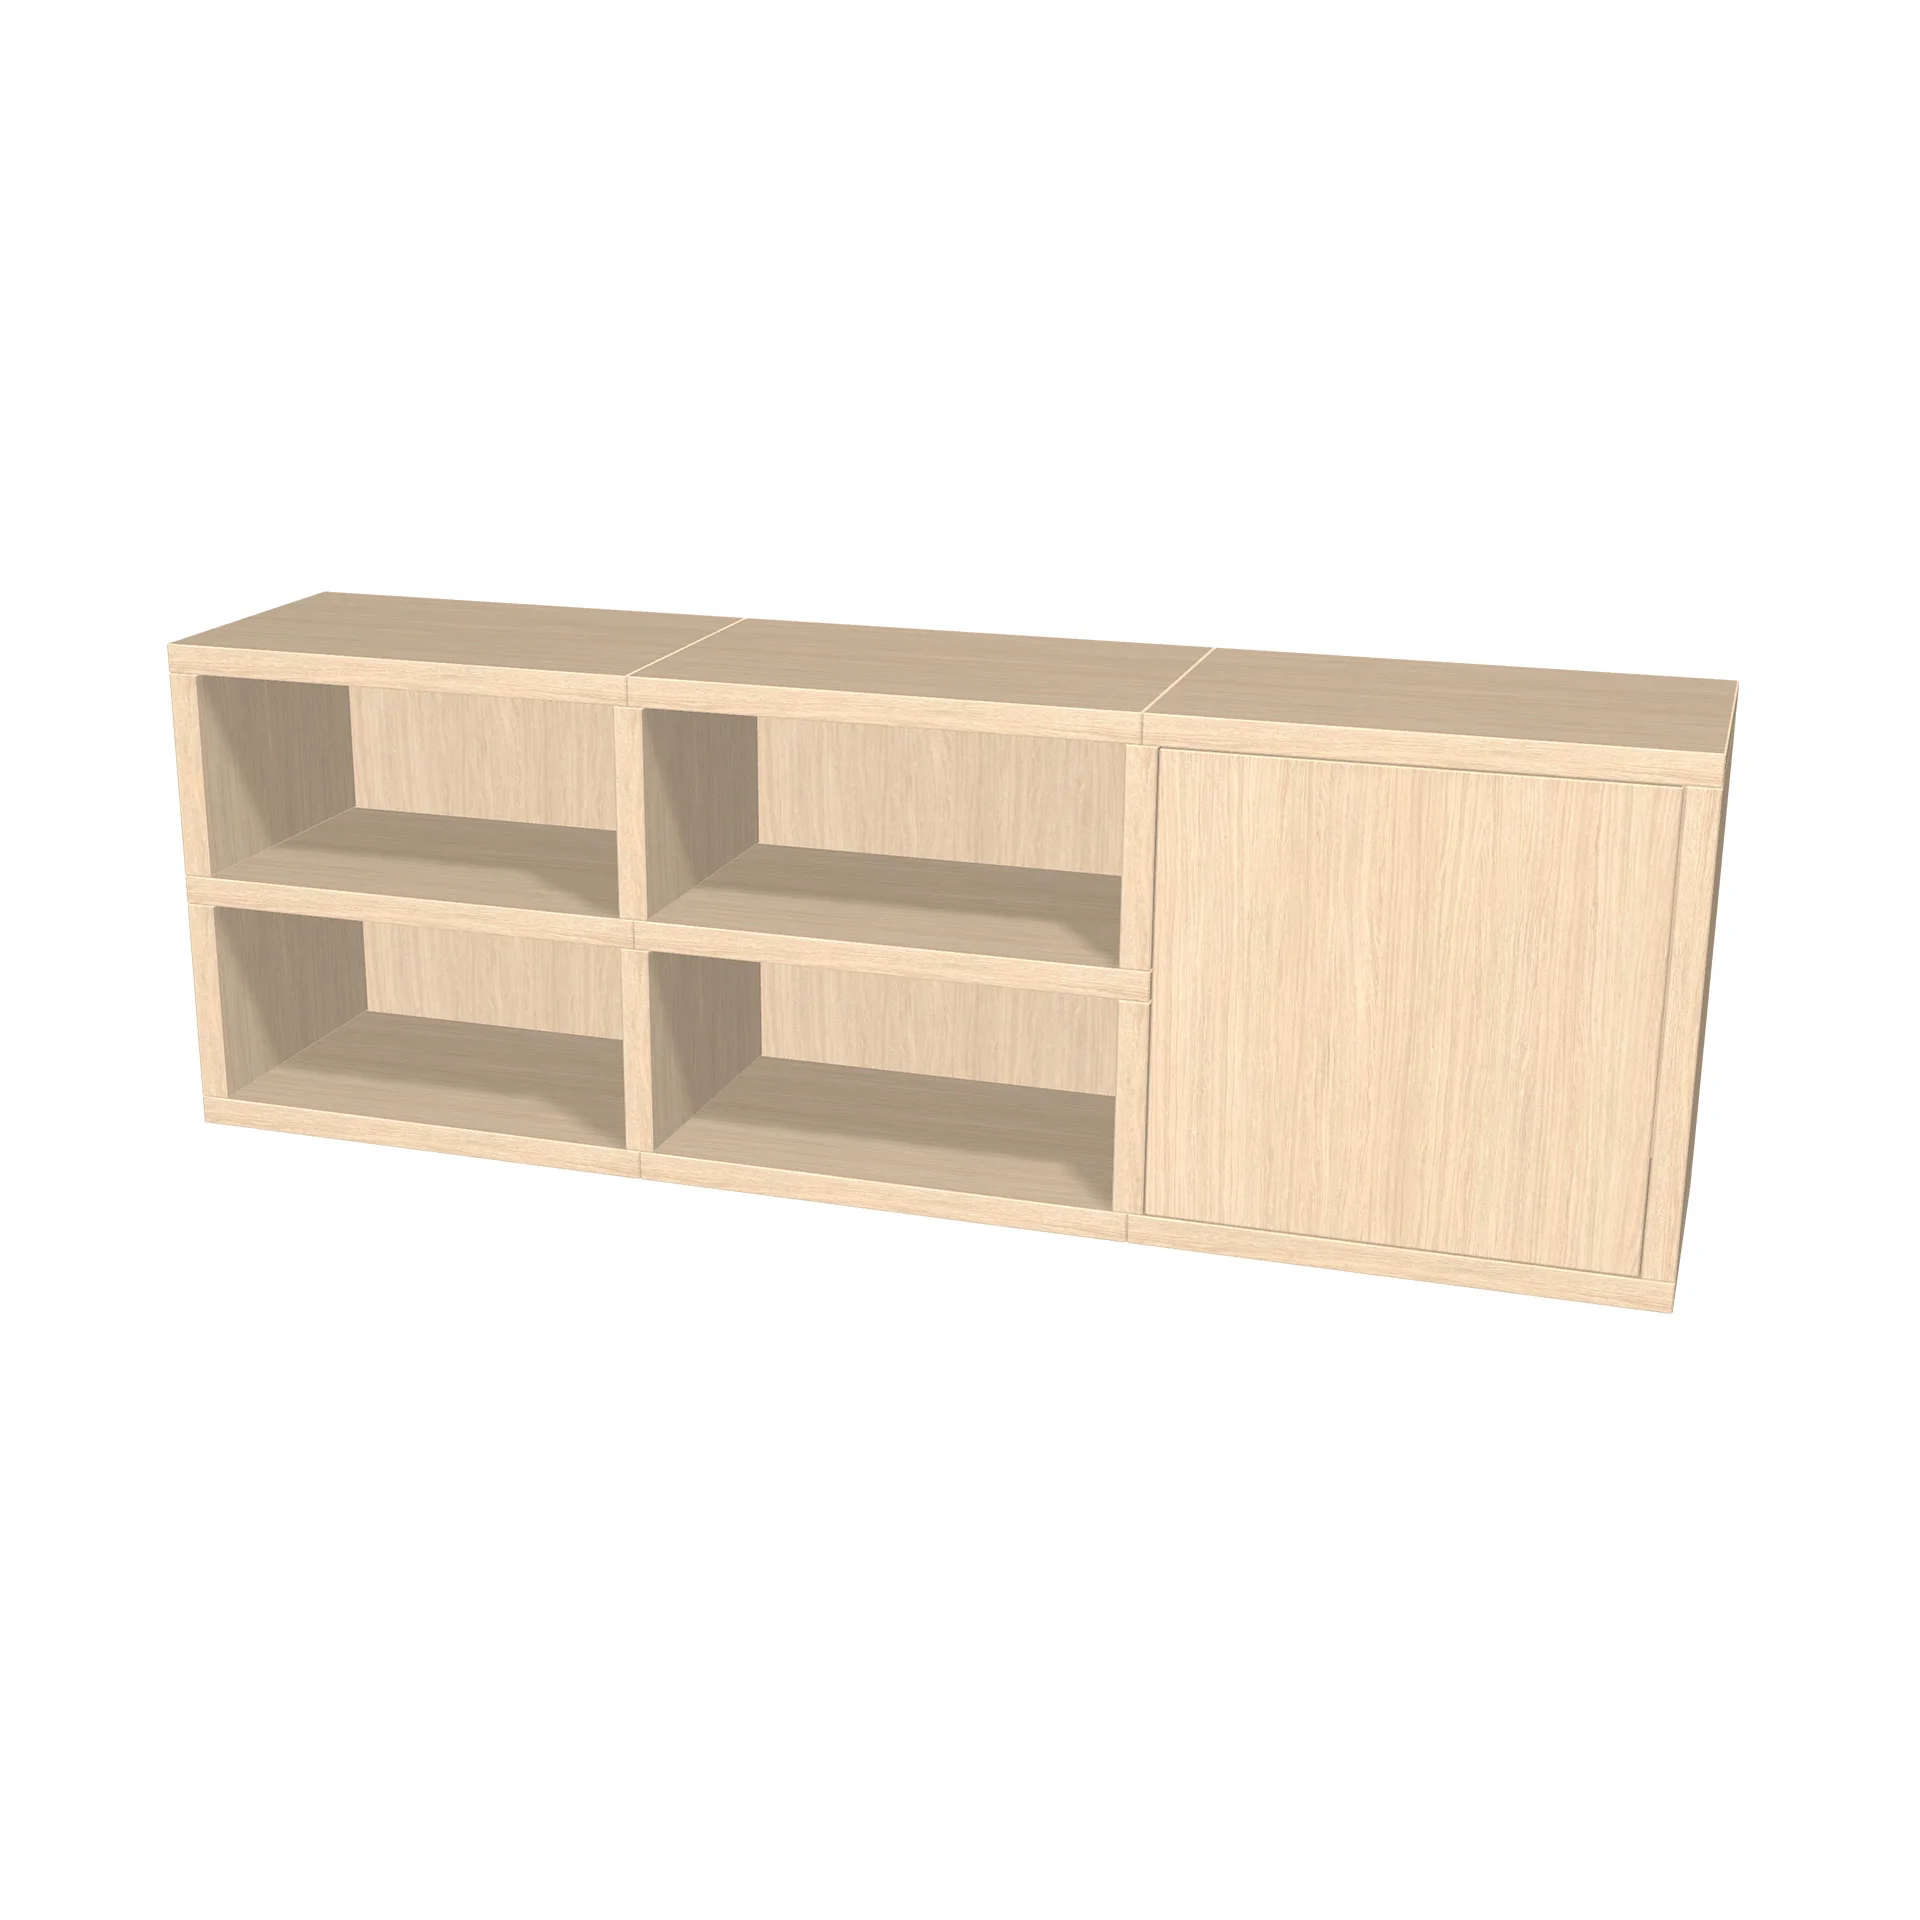 TSFC032 in natural oak furniture board